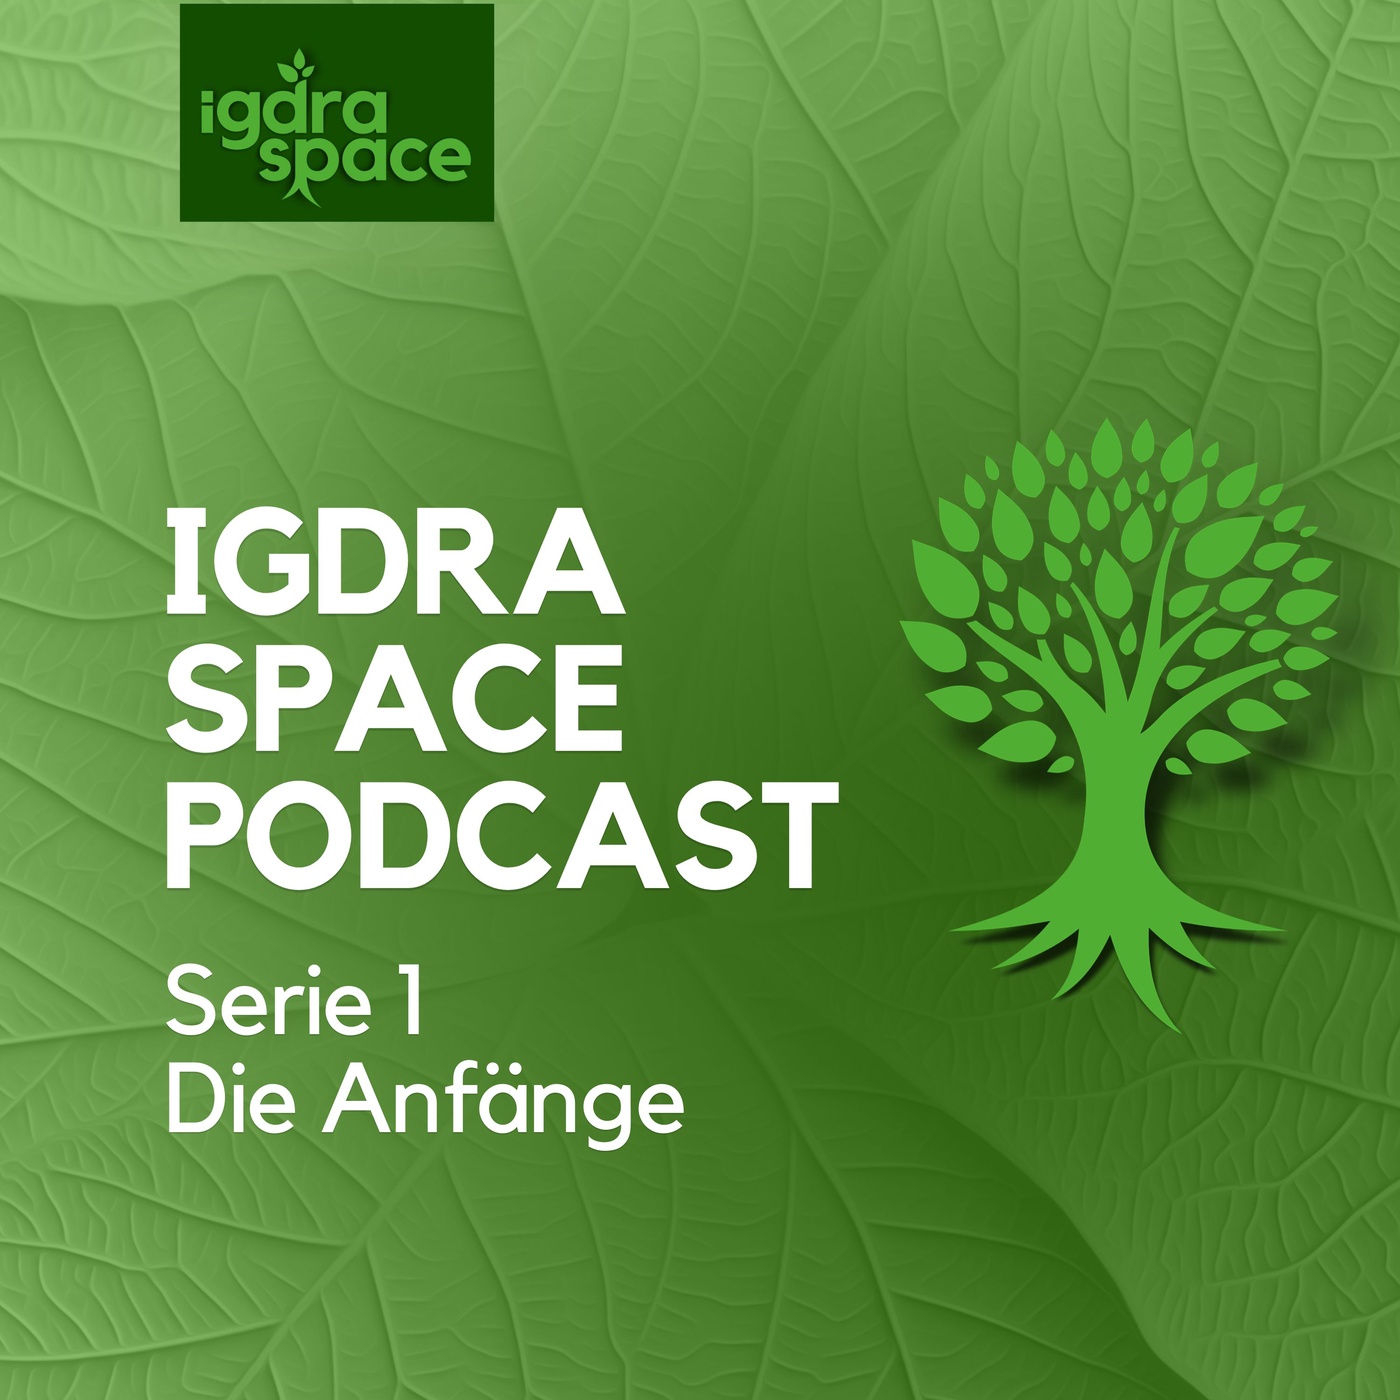 igdra space - Kulturanthropologie & Kulturwandel unter dem Welten- und Lebensbaum